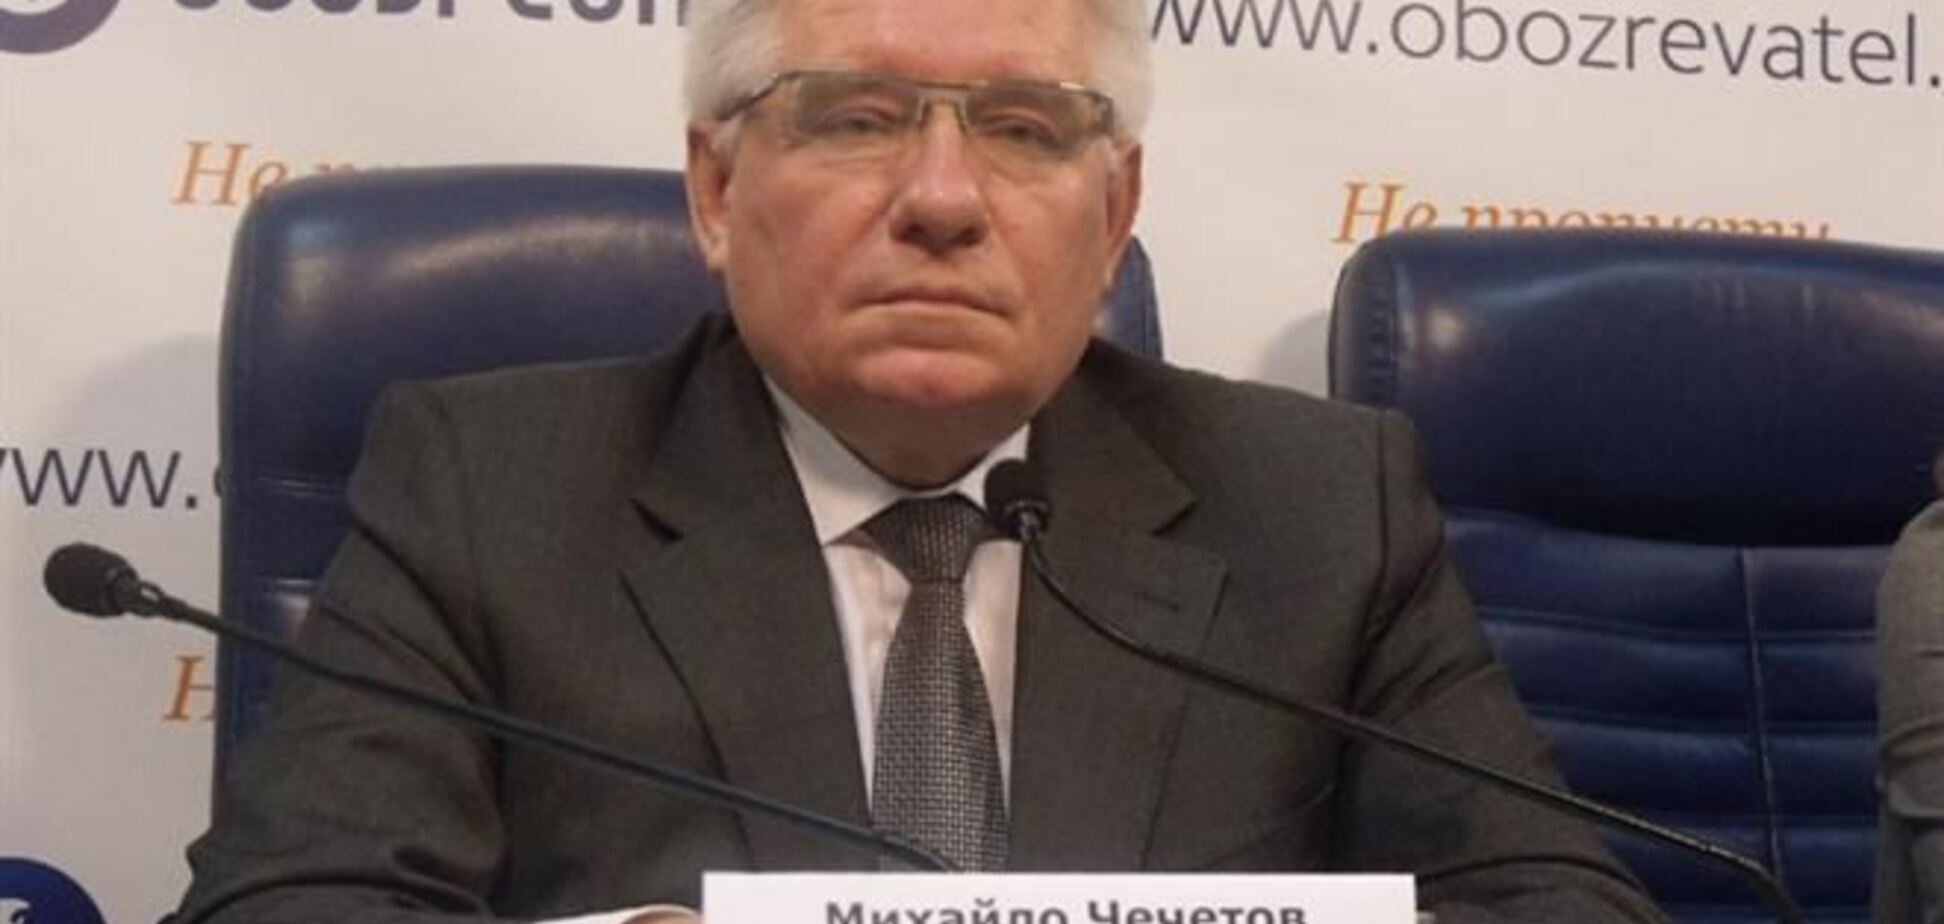 Яценюк і Тягнибок повинні відмовитися від участі в президентських виборах - Чечетов